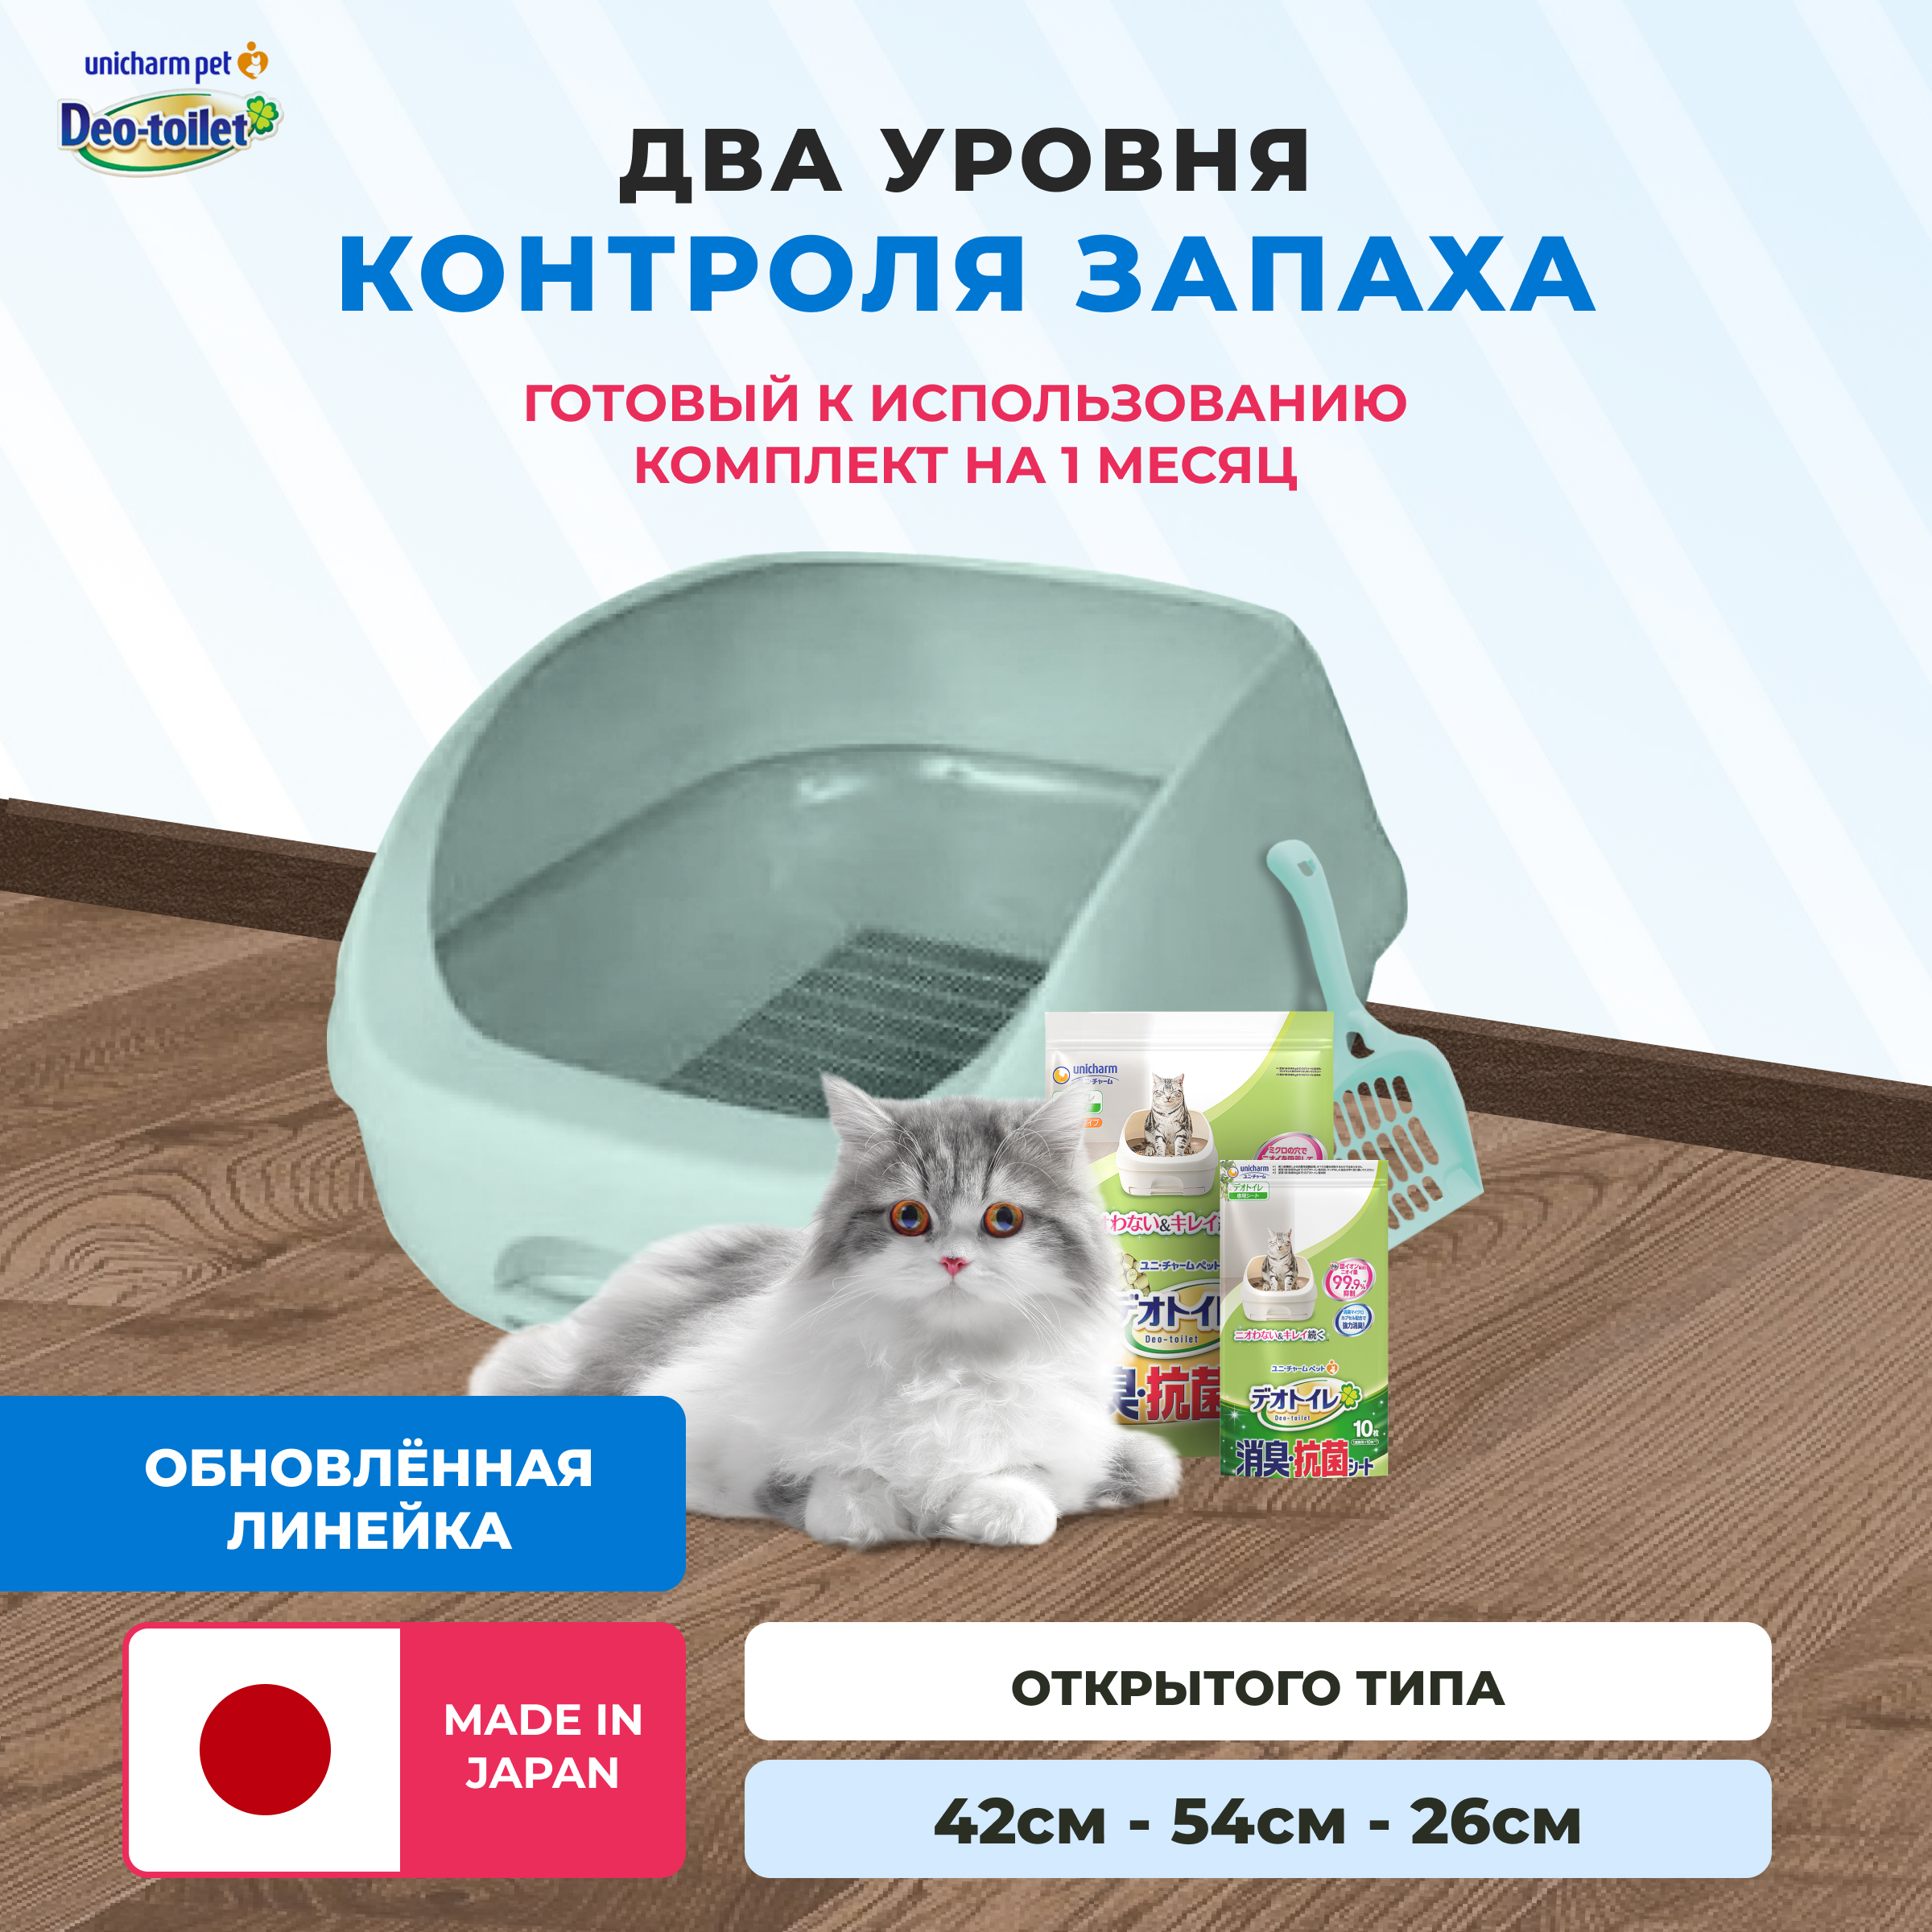 Системный туалет для кошек Unicharm DeoToilet, бирюзовый, набор